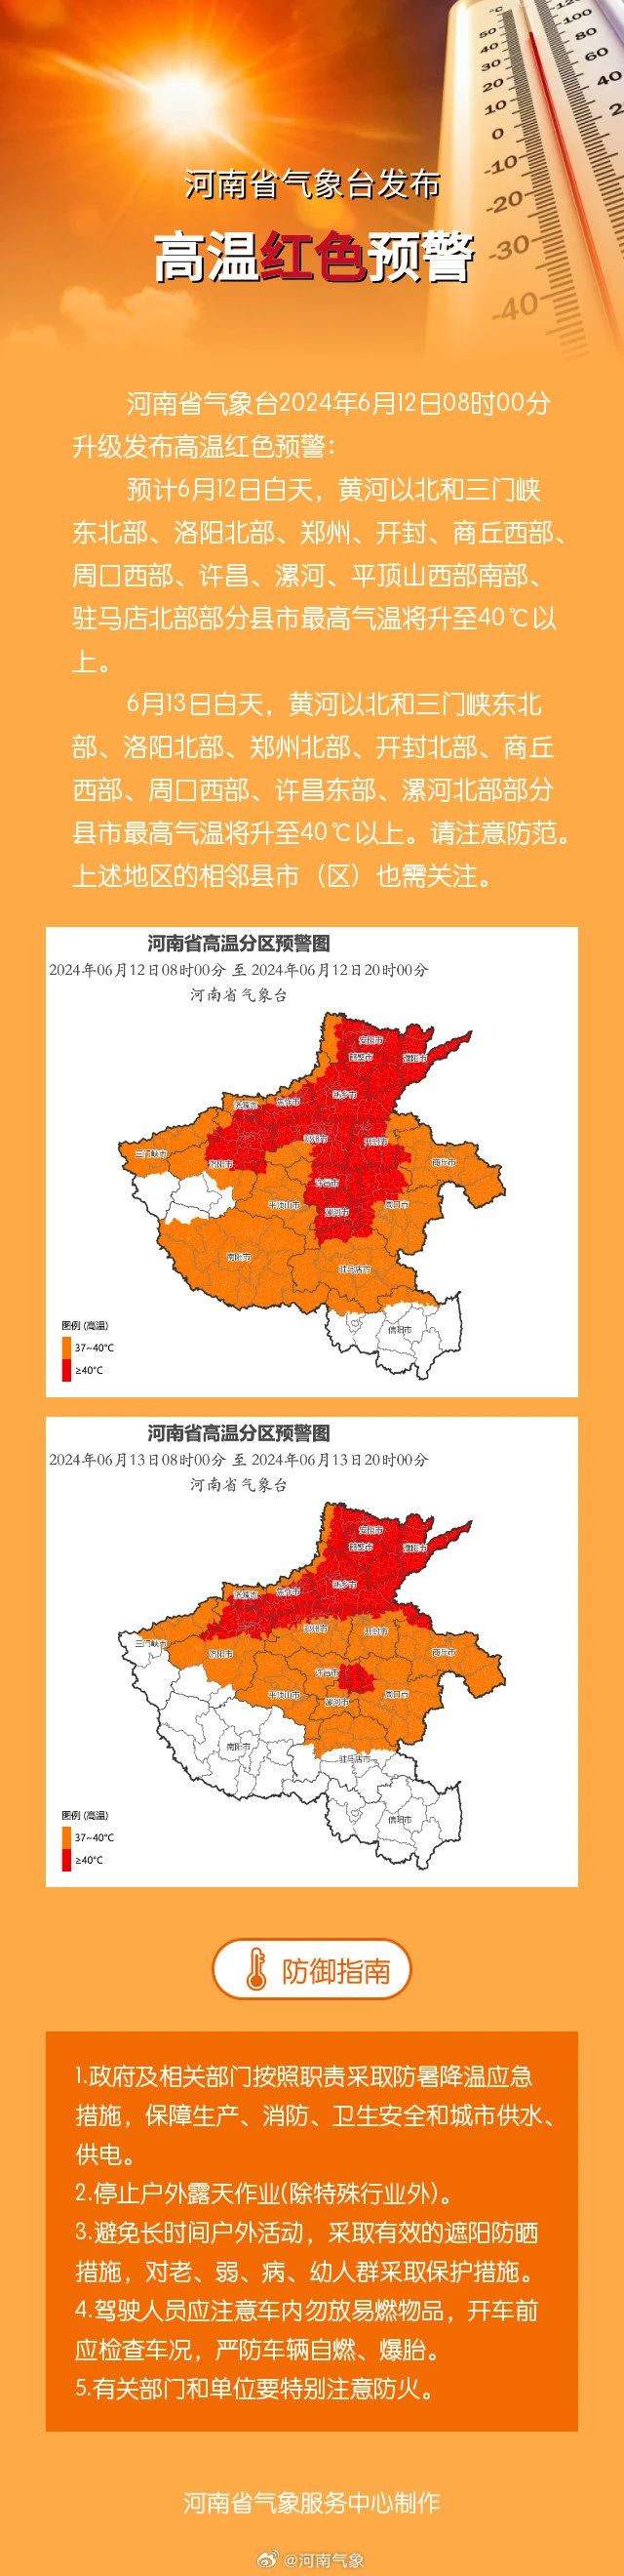 河南省已达到轻度干旱等级 多地气温将超40℃ 发布高温红色预警 第1张